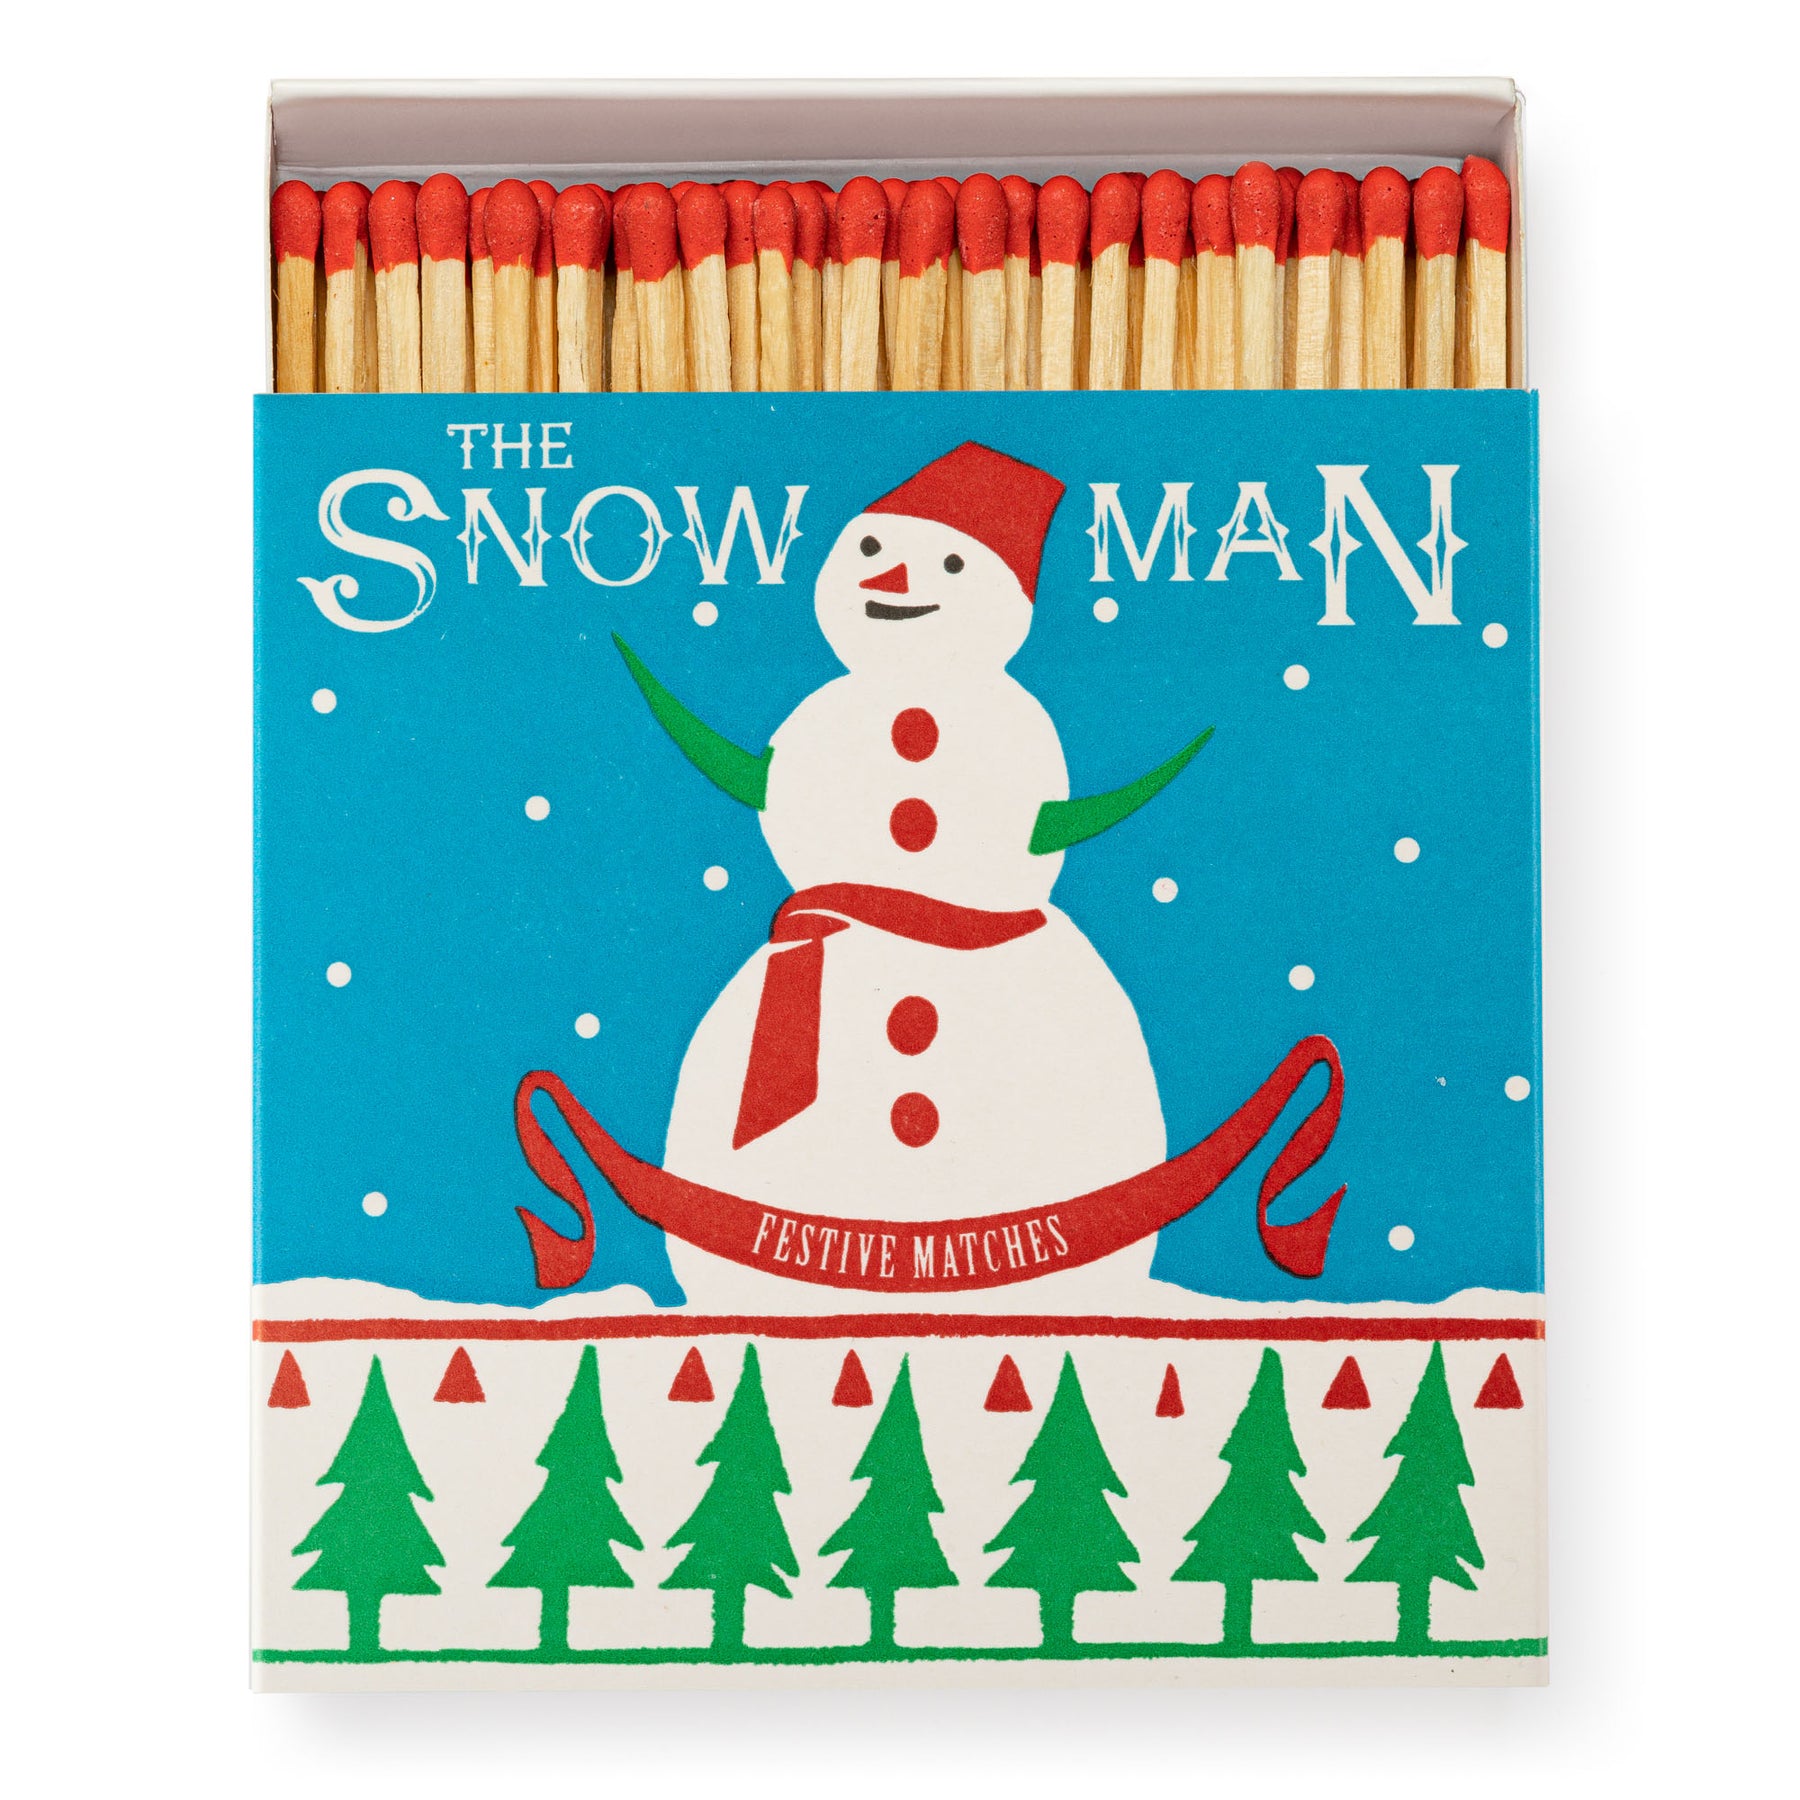 Archivist The Snowman Matches